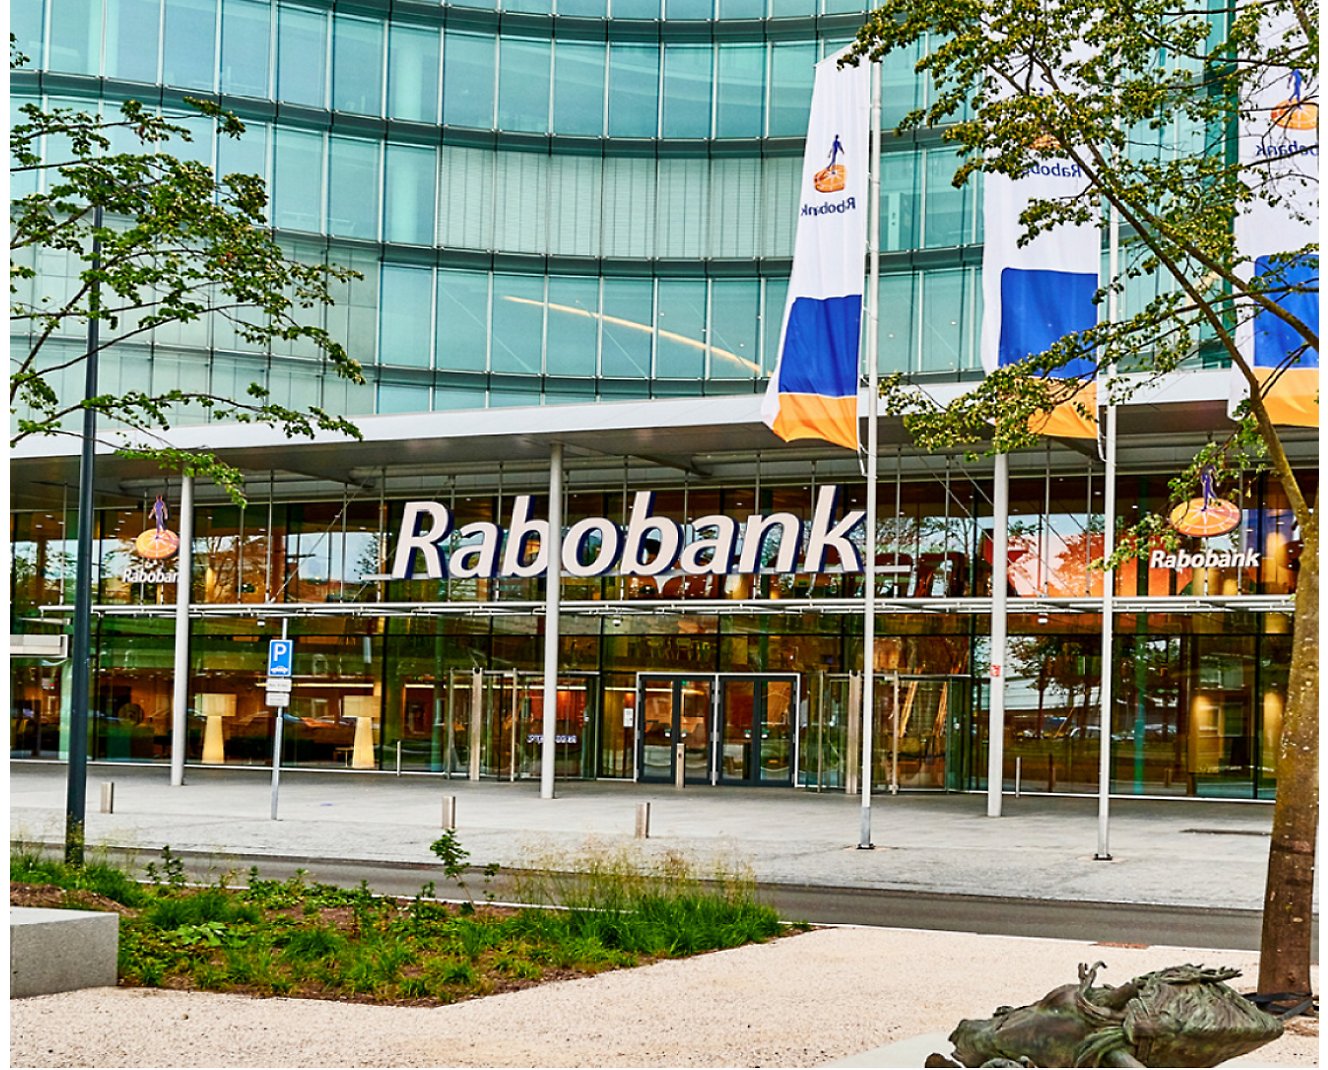 En bygning med et skilt som sier Rabobank.